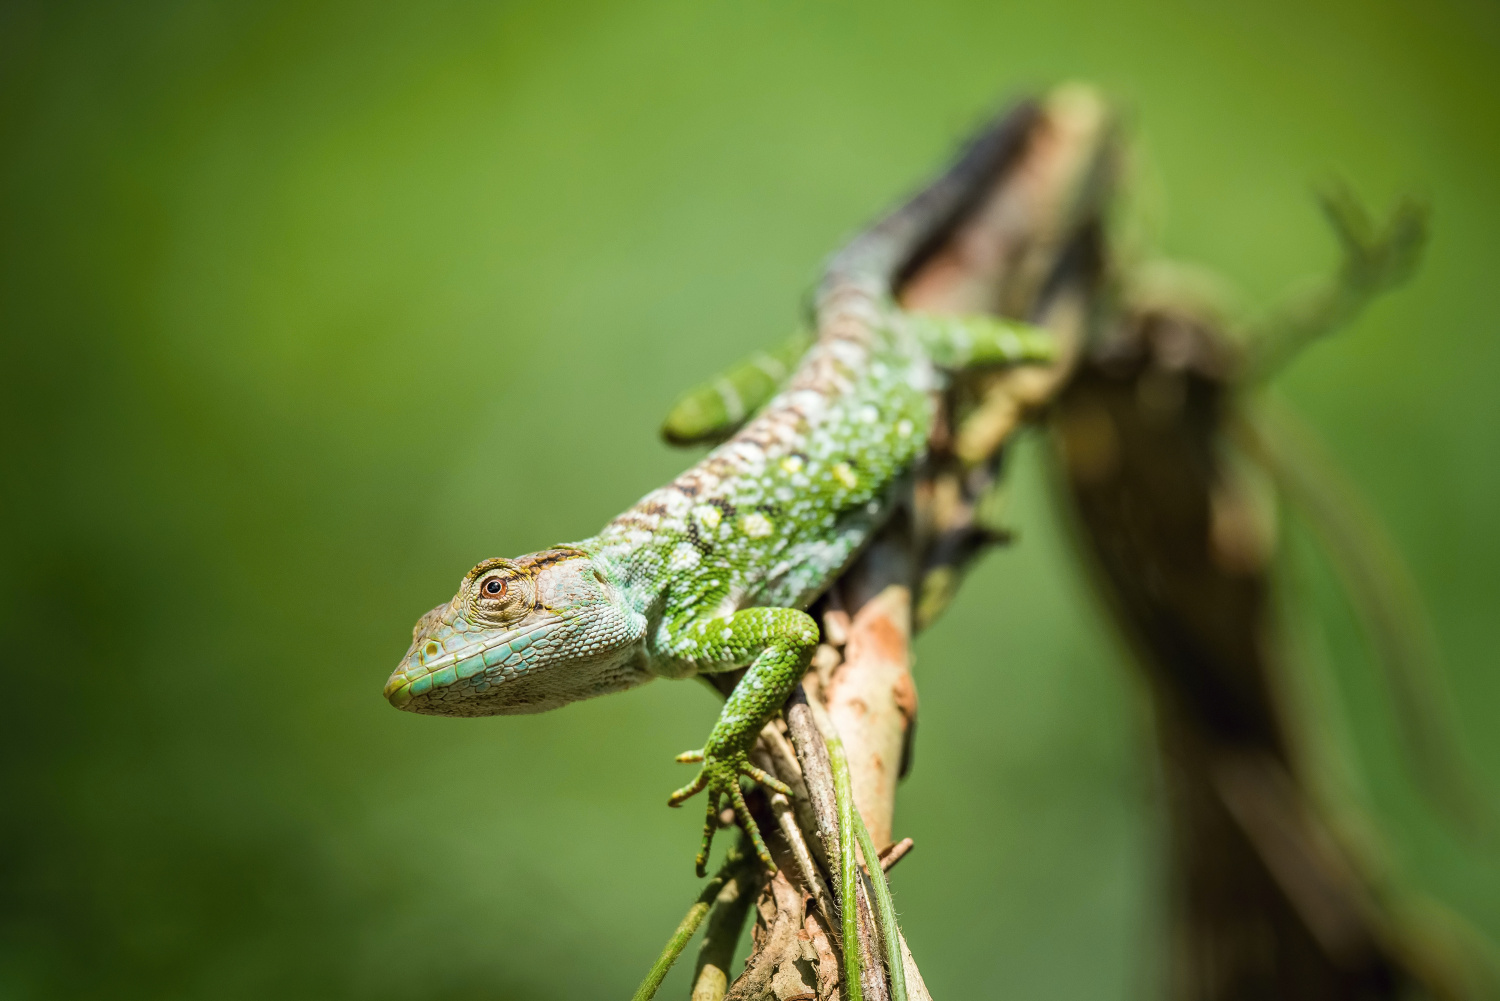 The Lizard (Trinidad and Tobago)